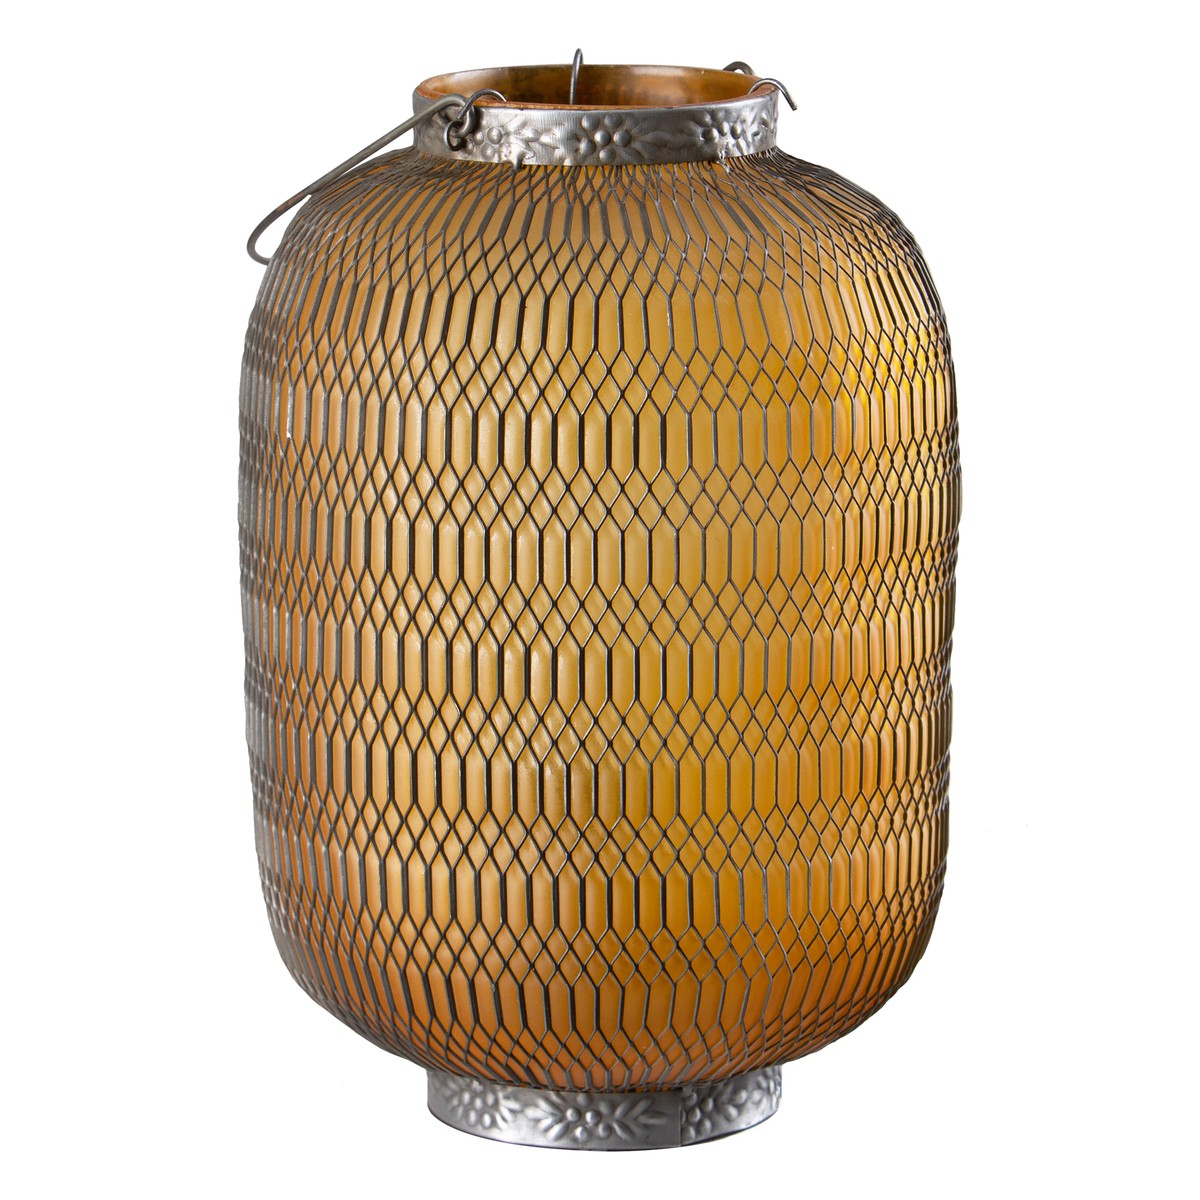   Lanterne Allongée nid d’abeille en verre coloré Jaune paille 19x19x28cm